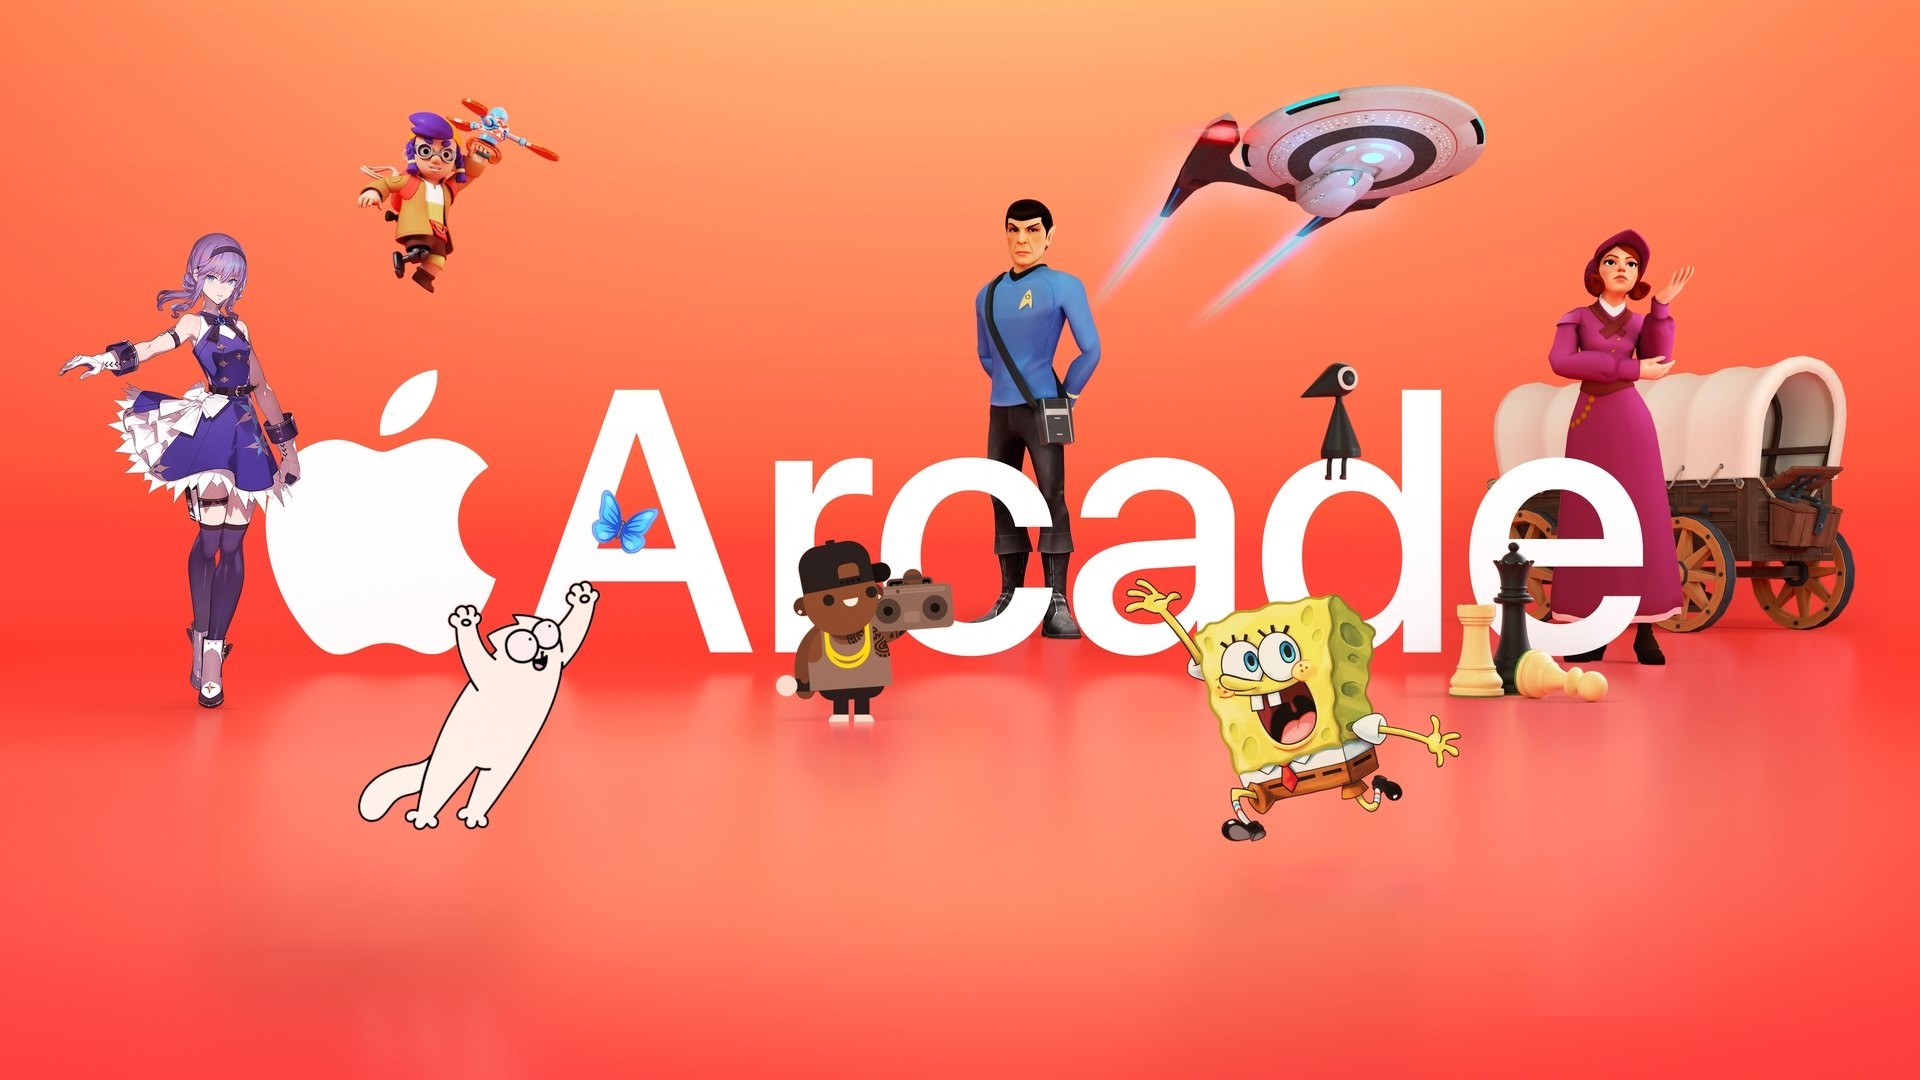 Baixe e jogue jogos do Apple Arcade no Mac - Suporte da Apple (BR)